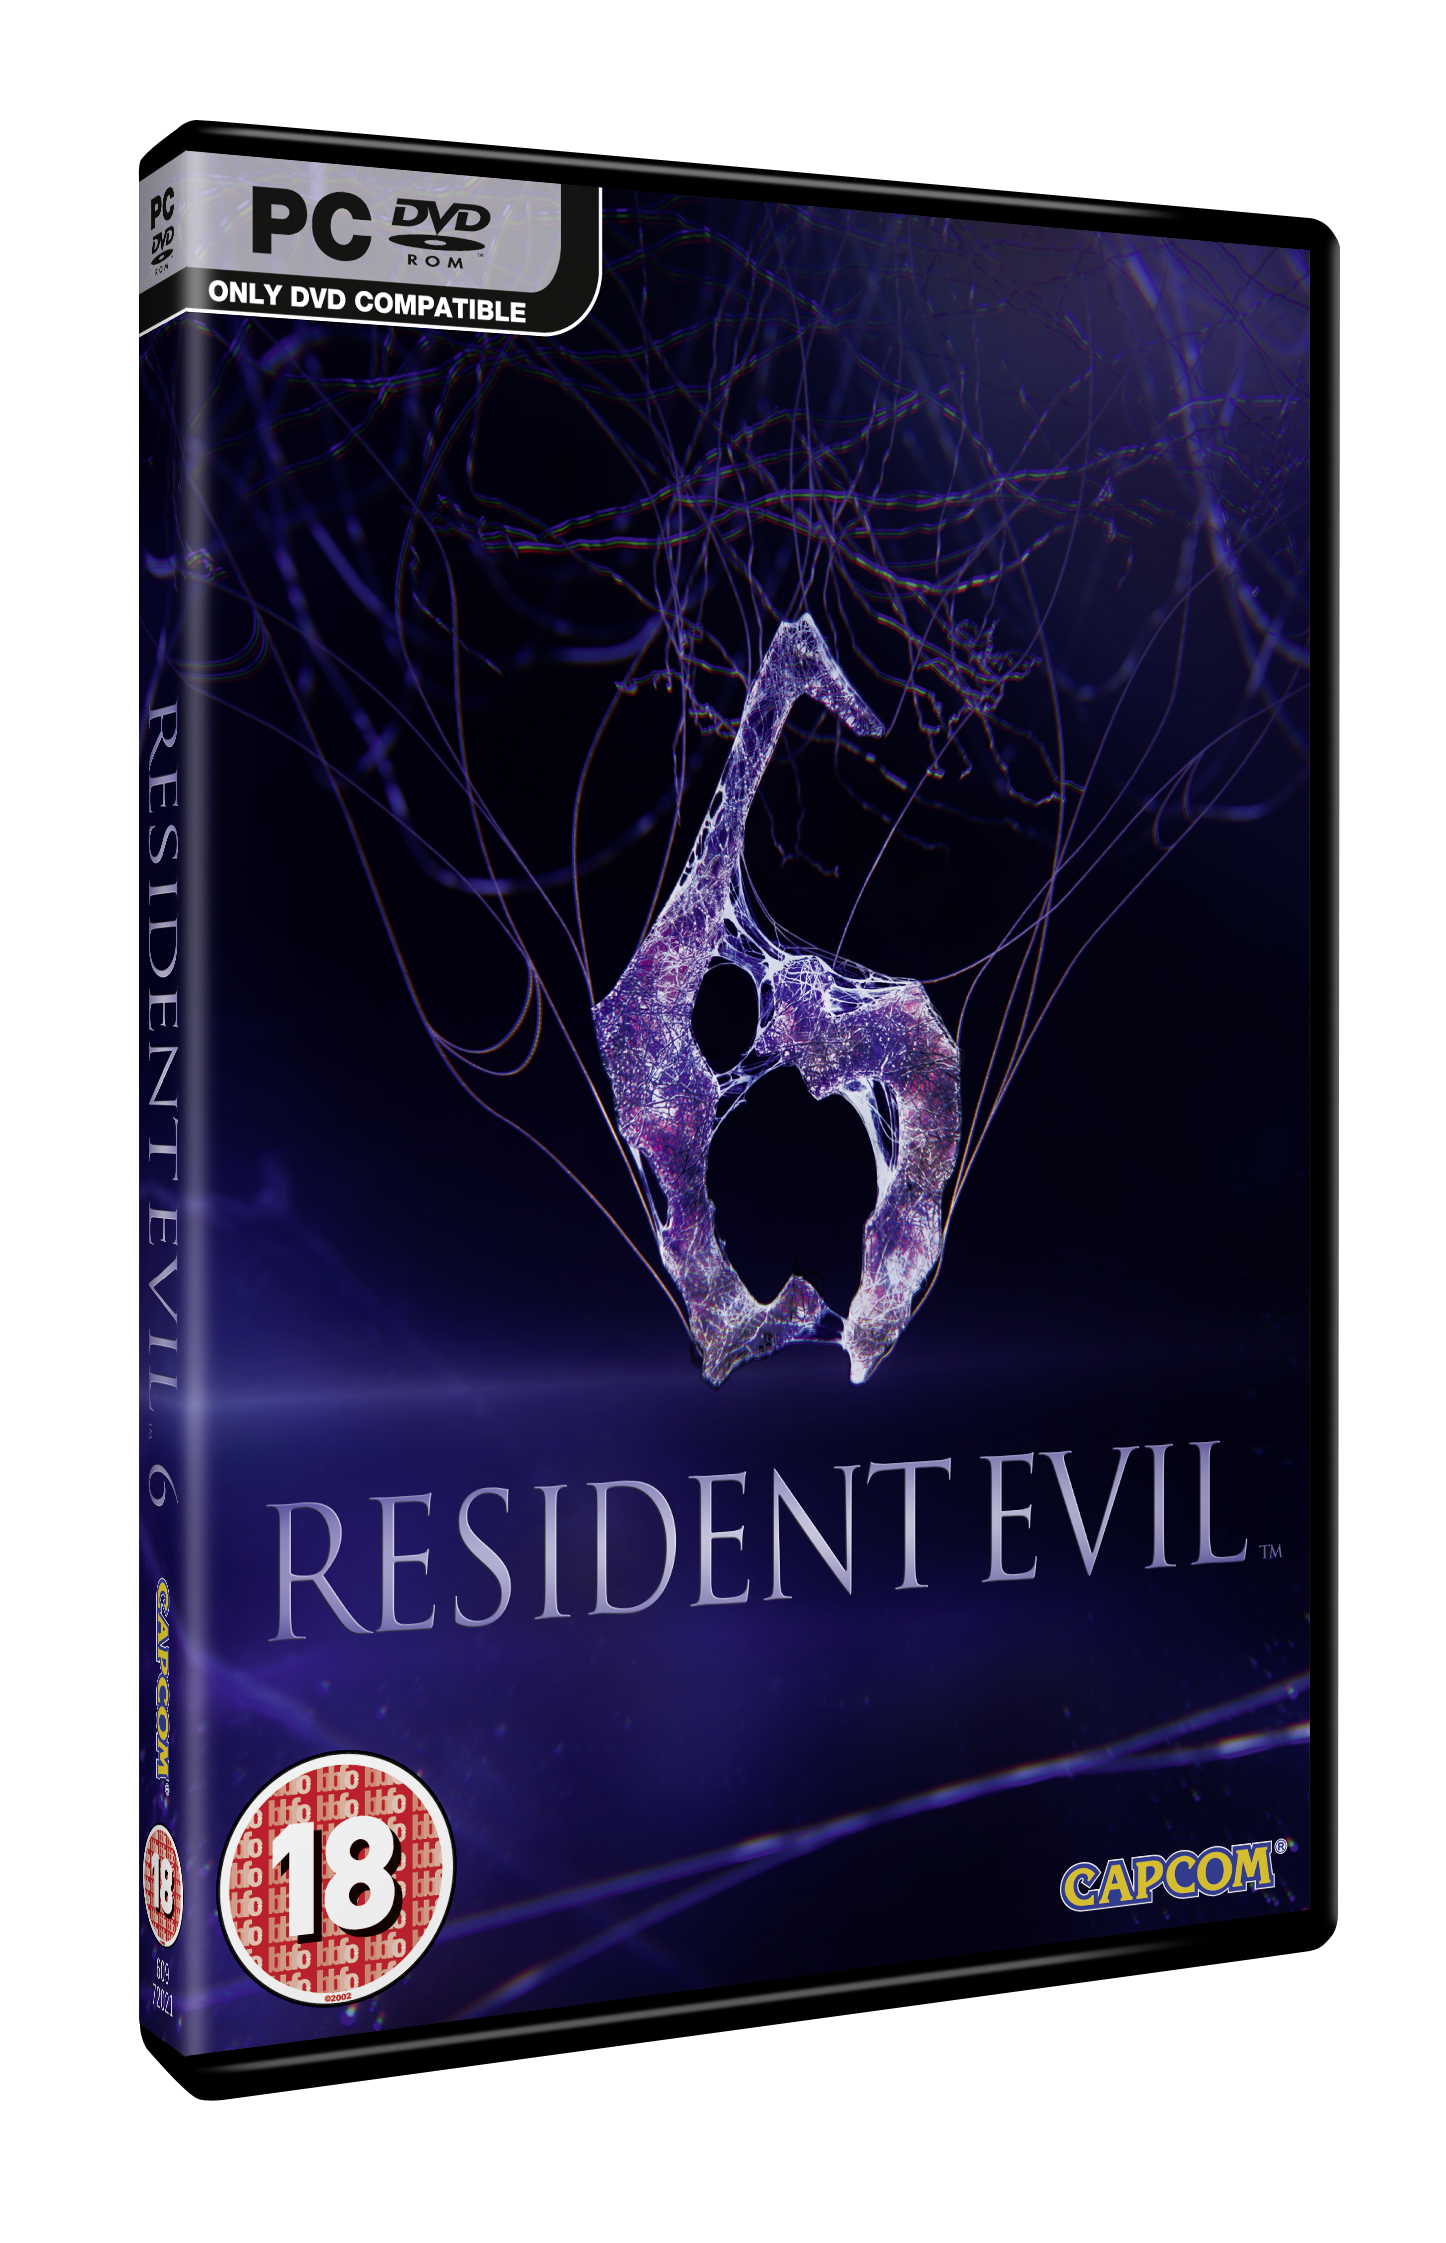 Resident Evil 6 (ps3). Resident Evil 6 Boxart. Диск Resident Evil 6 PC. Resident Evil 5 ps3 обложка. Resident evil 6 отзывы